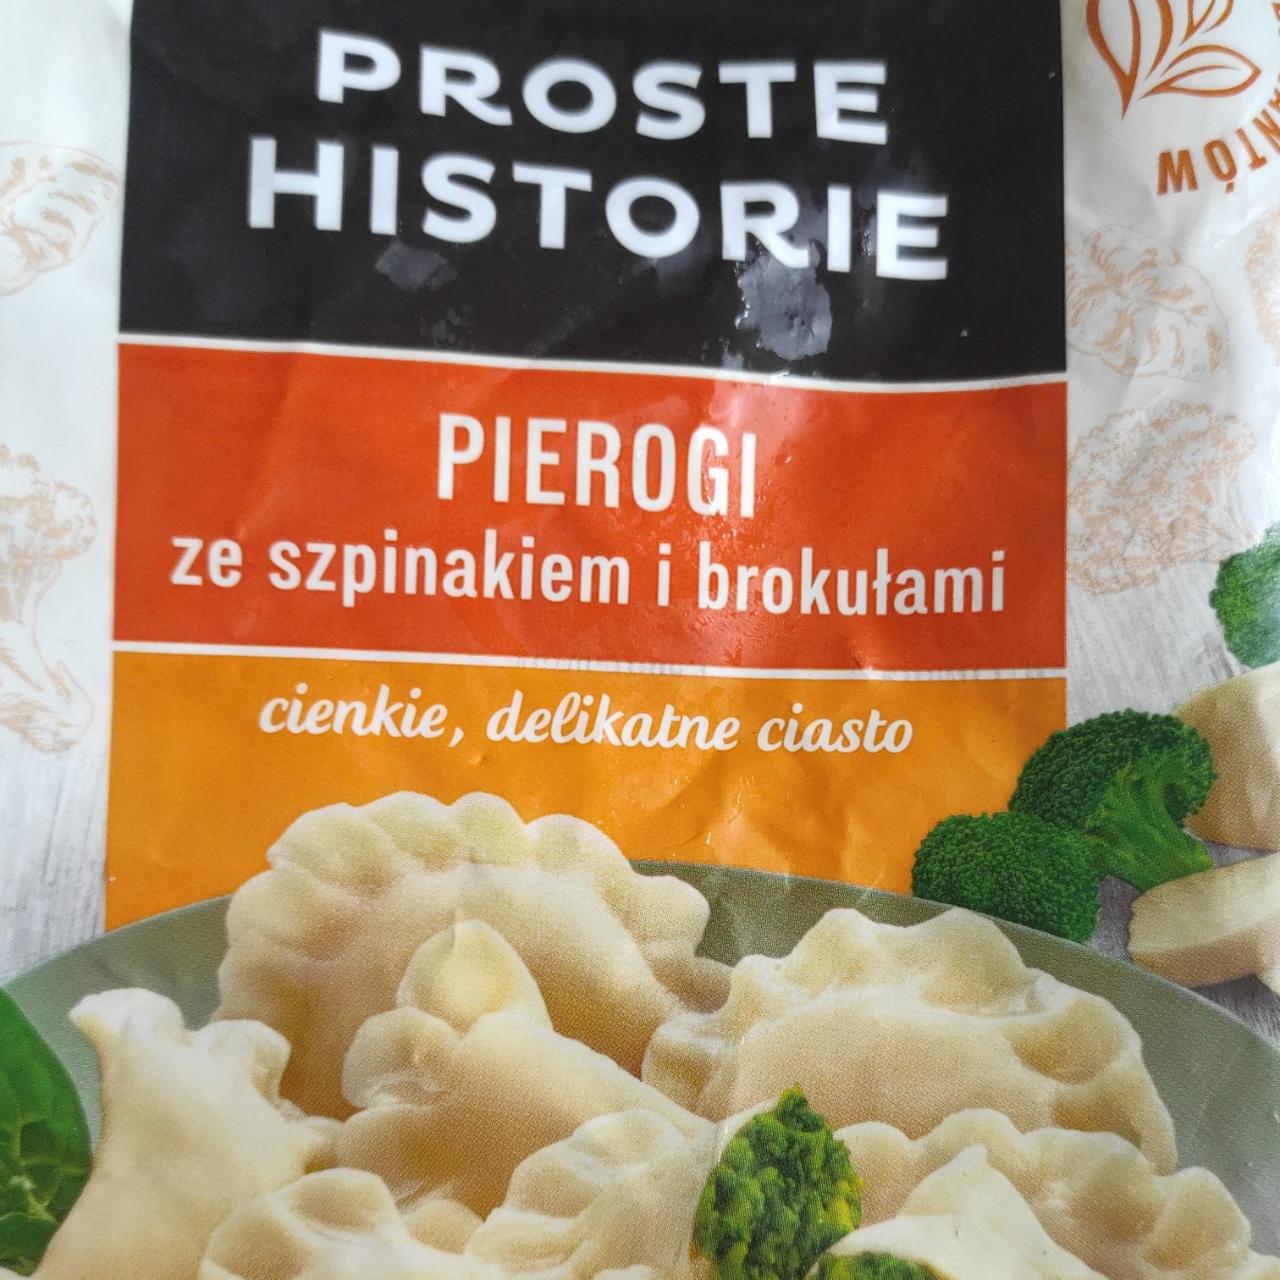 Fotografie - Pierogi ze szpinakiem i brokułami Proste Historie